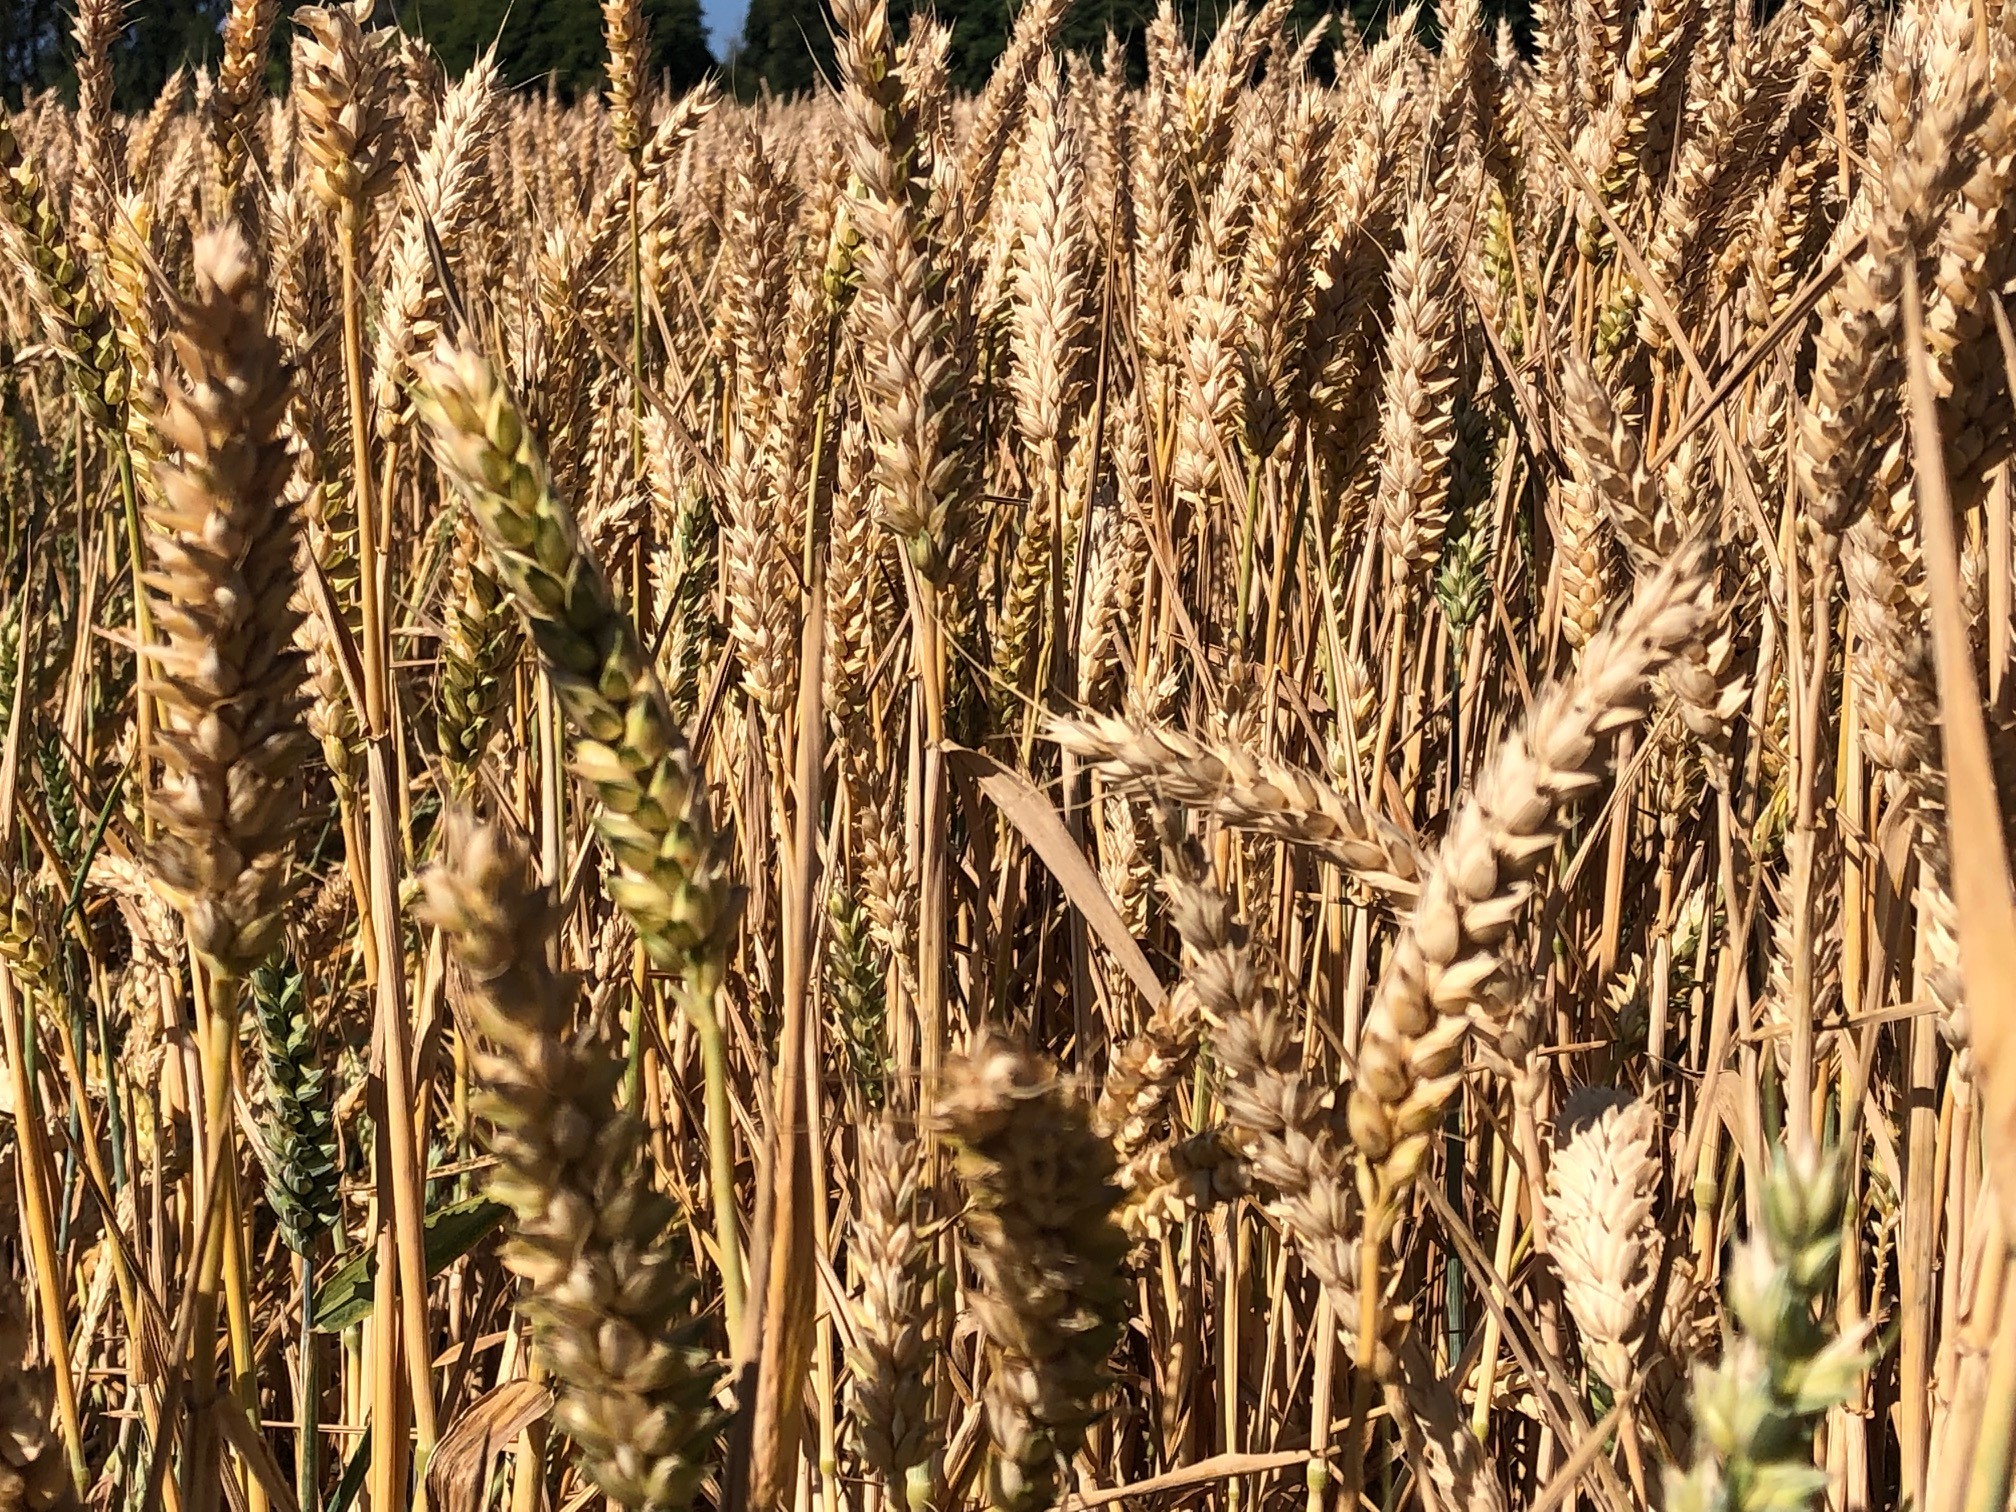 Wheat ears in field